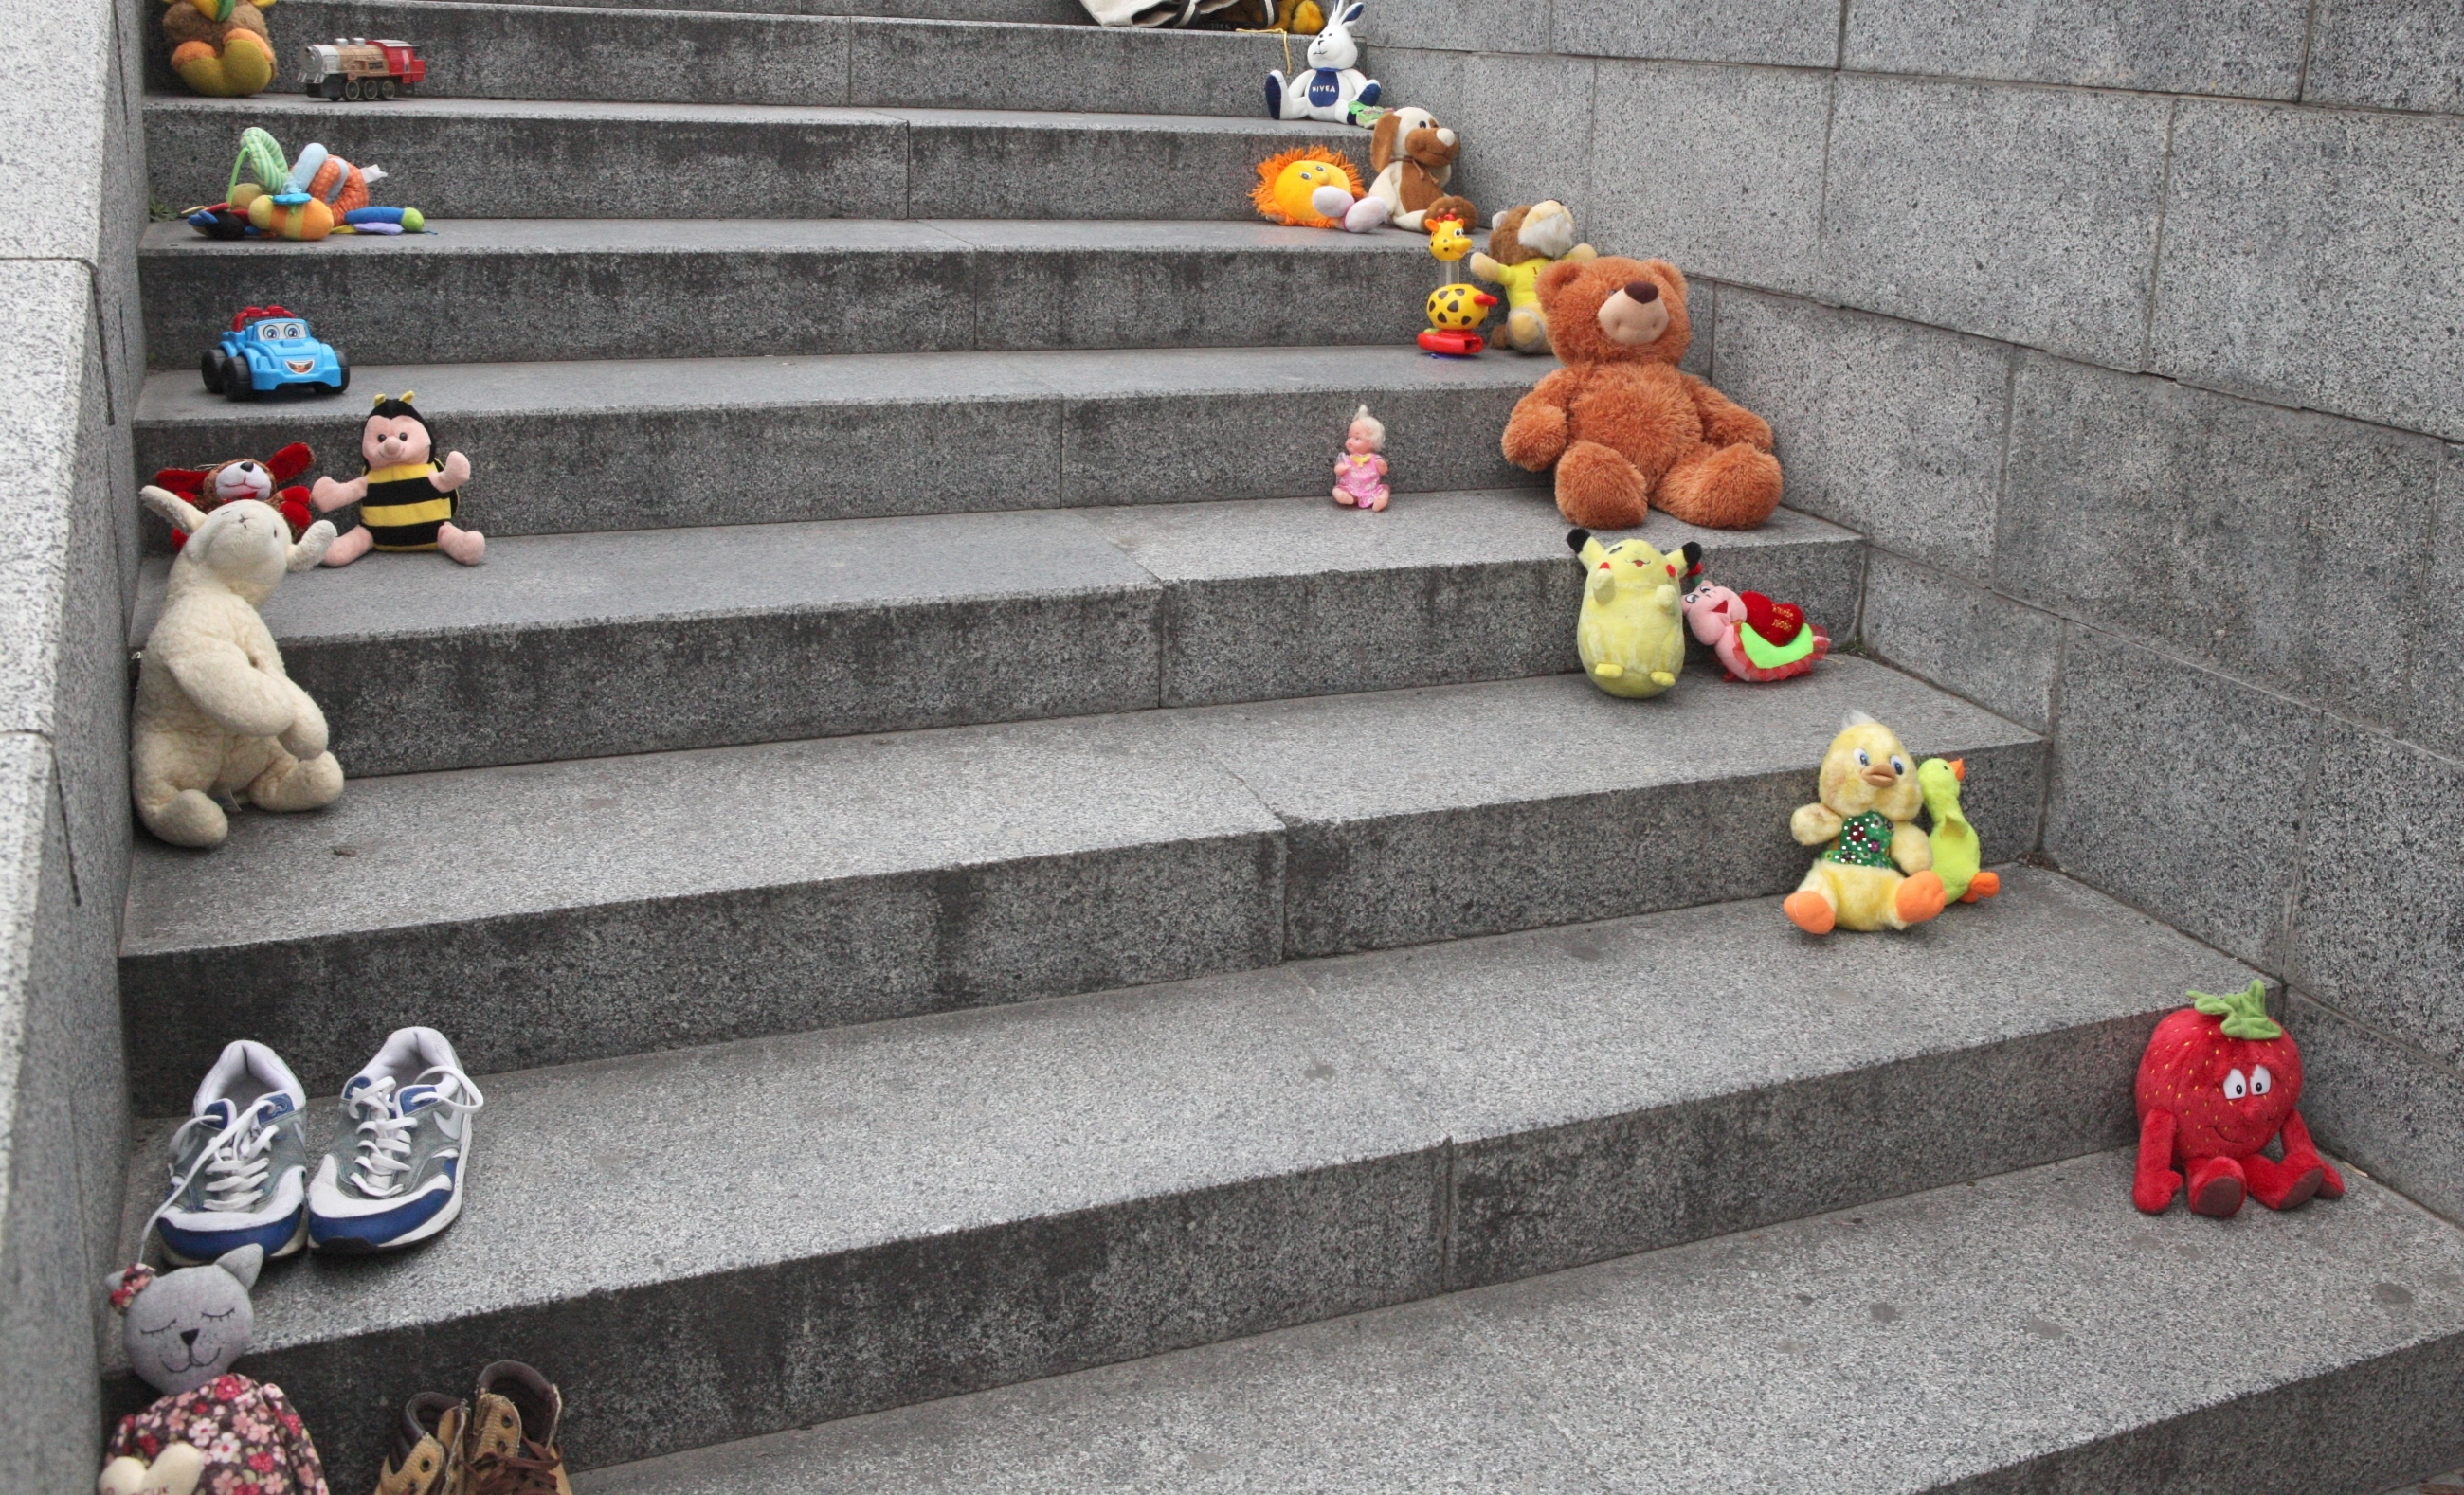 191 іграшка: у Вінниці вшанували пам’ять загиблих під час війни дітей